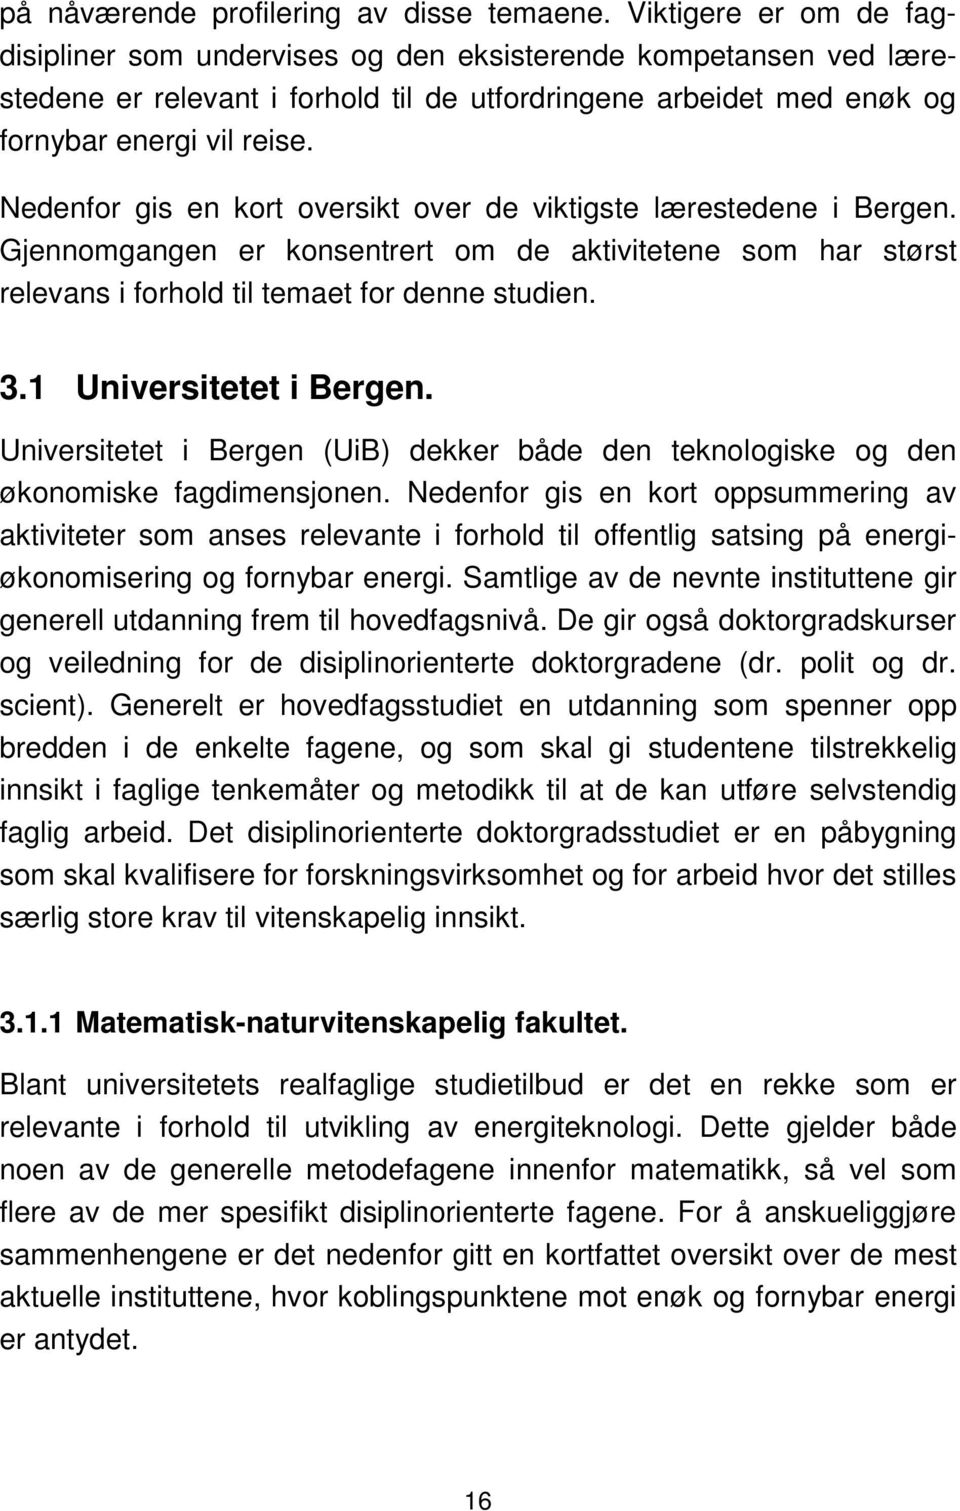 Nedenfor gis en kort oversikt over de viktigste lærestedene i Bergen. Gjennomgangen er konsentrert om de aktivitetene som har størst relevans i forhold til temaet for denne studien. 3.